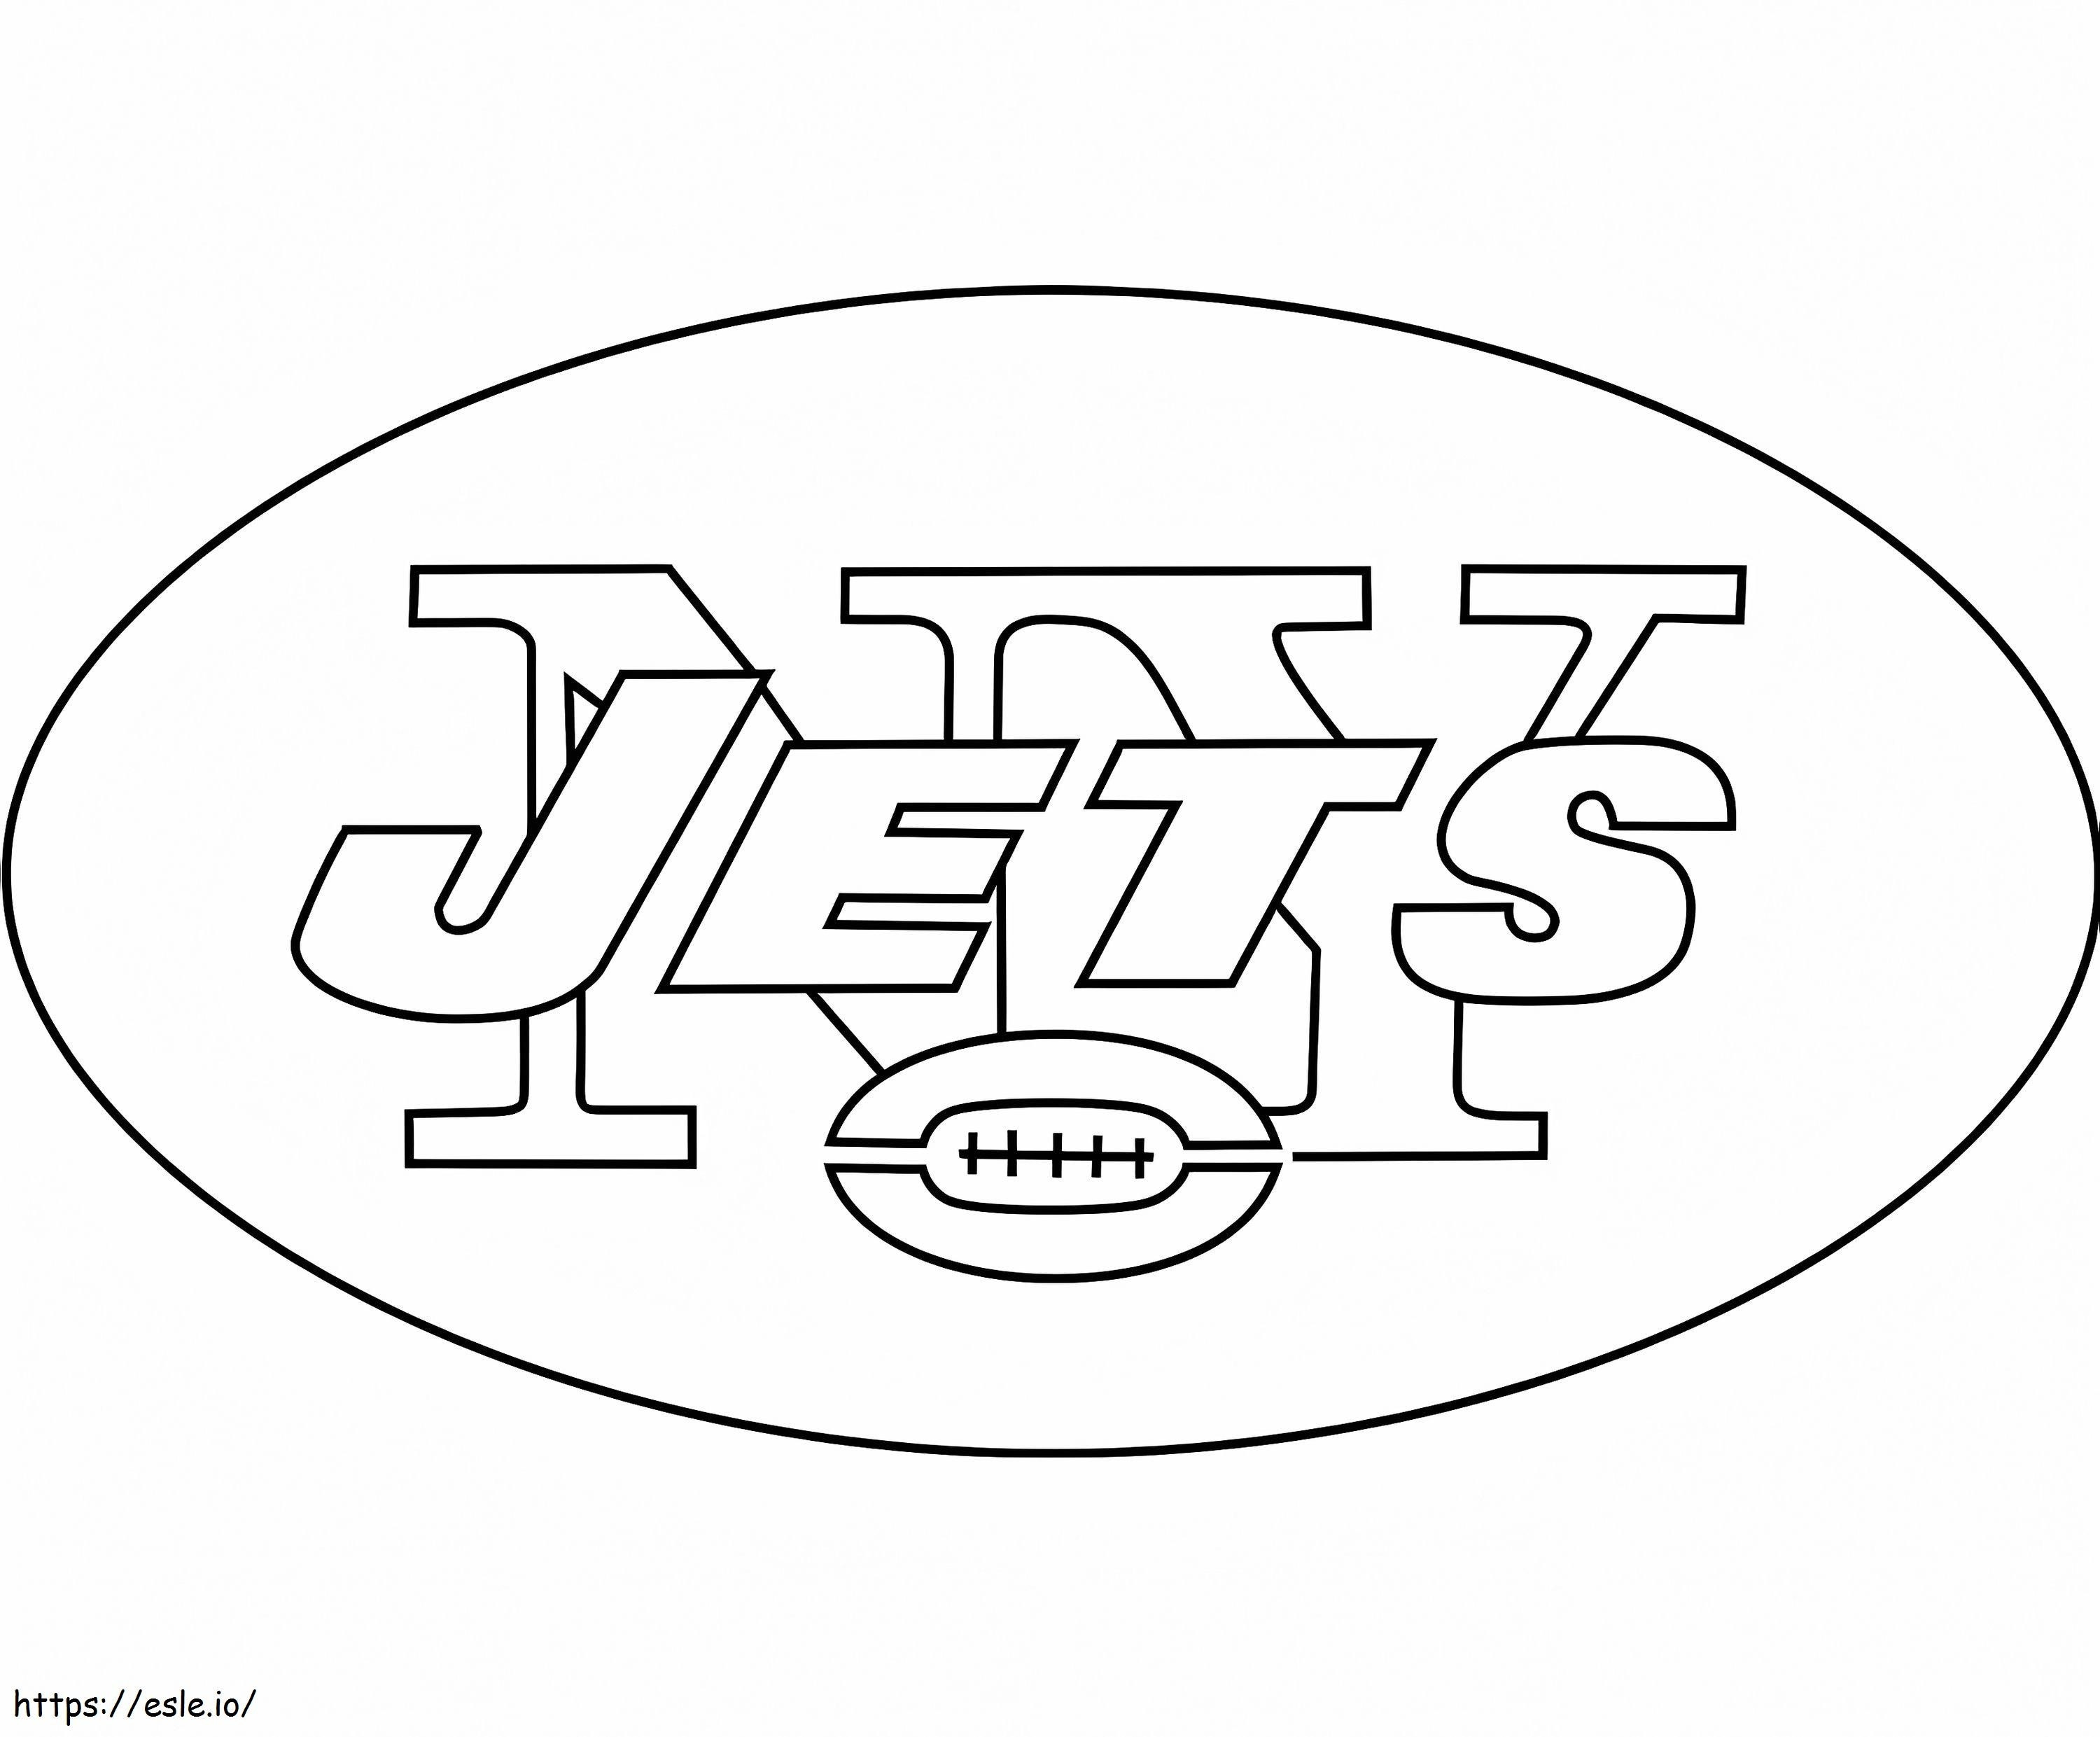 Logotipo de los Jets de Nueva York para colorear